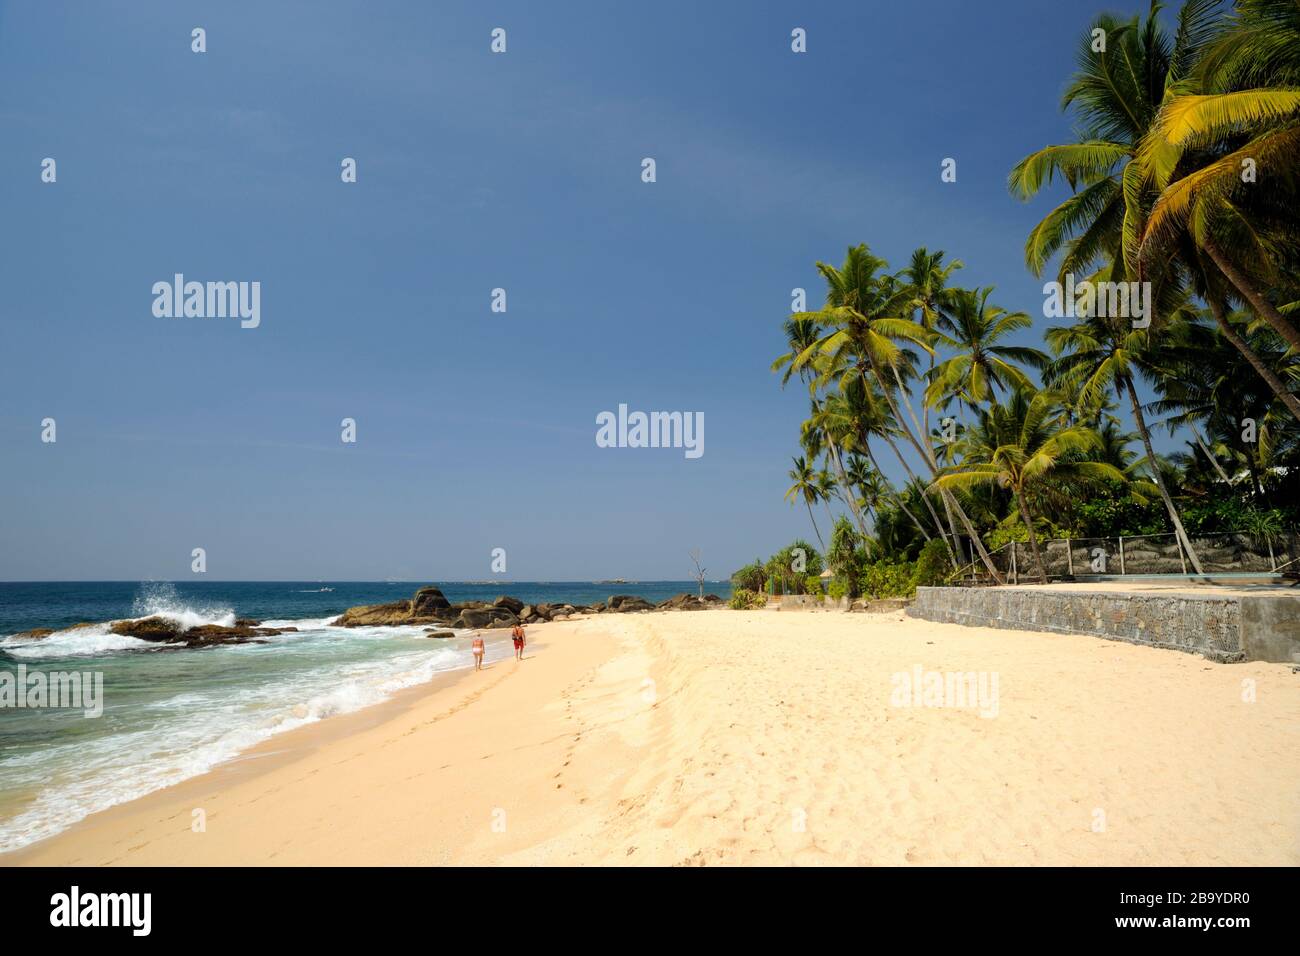 Sri Lanka, Galle, Unawatuna beach Stock Photo